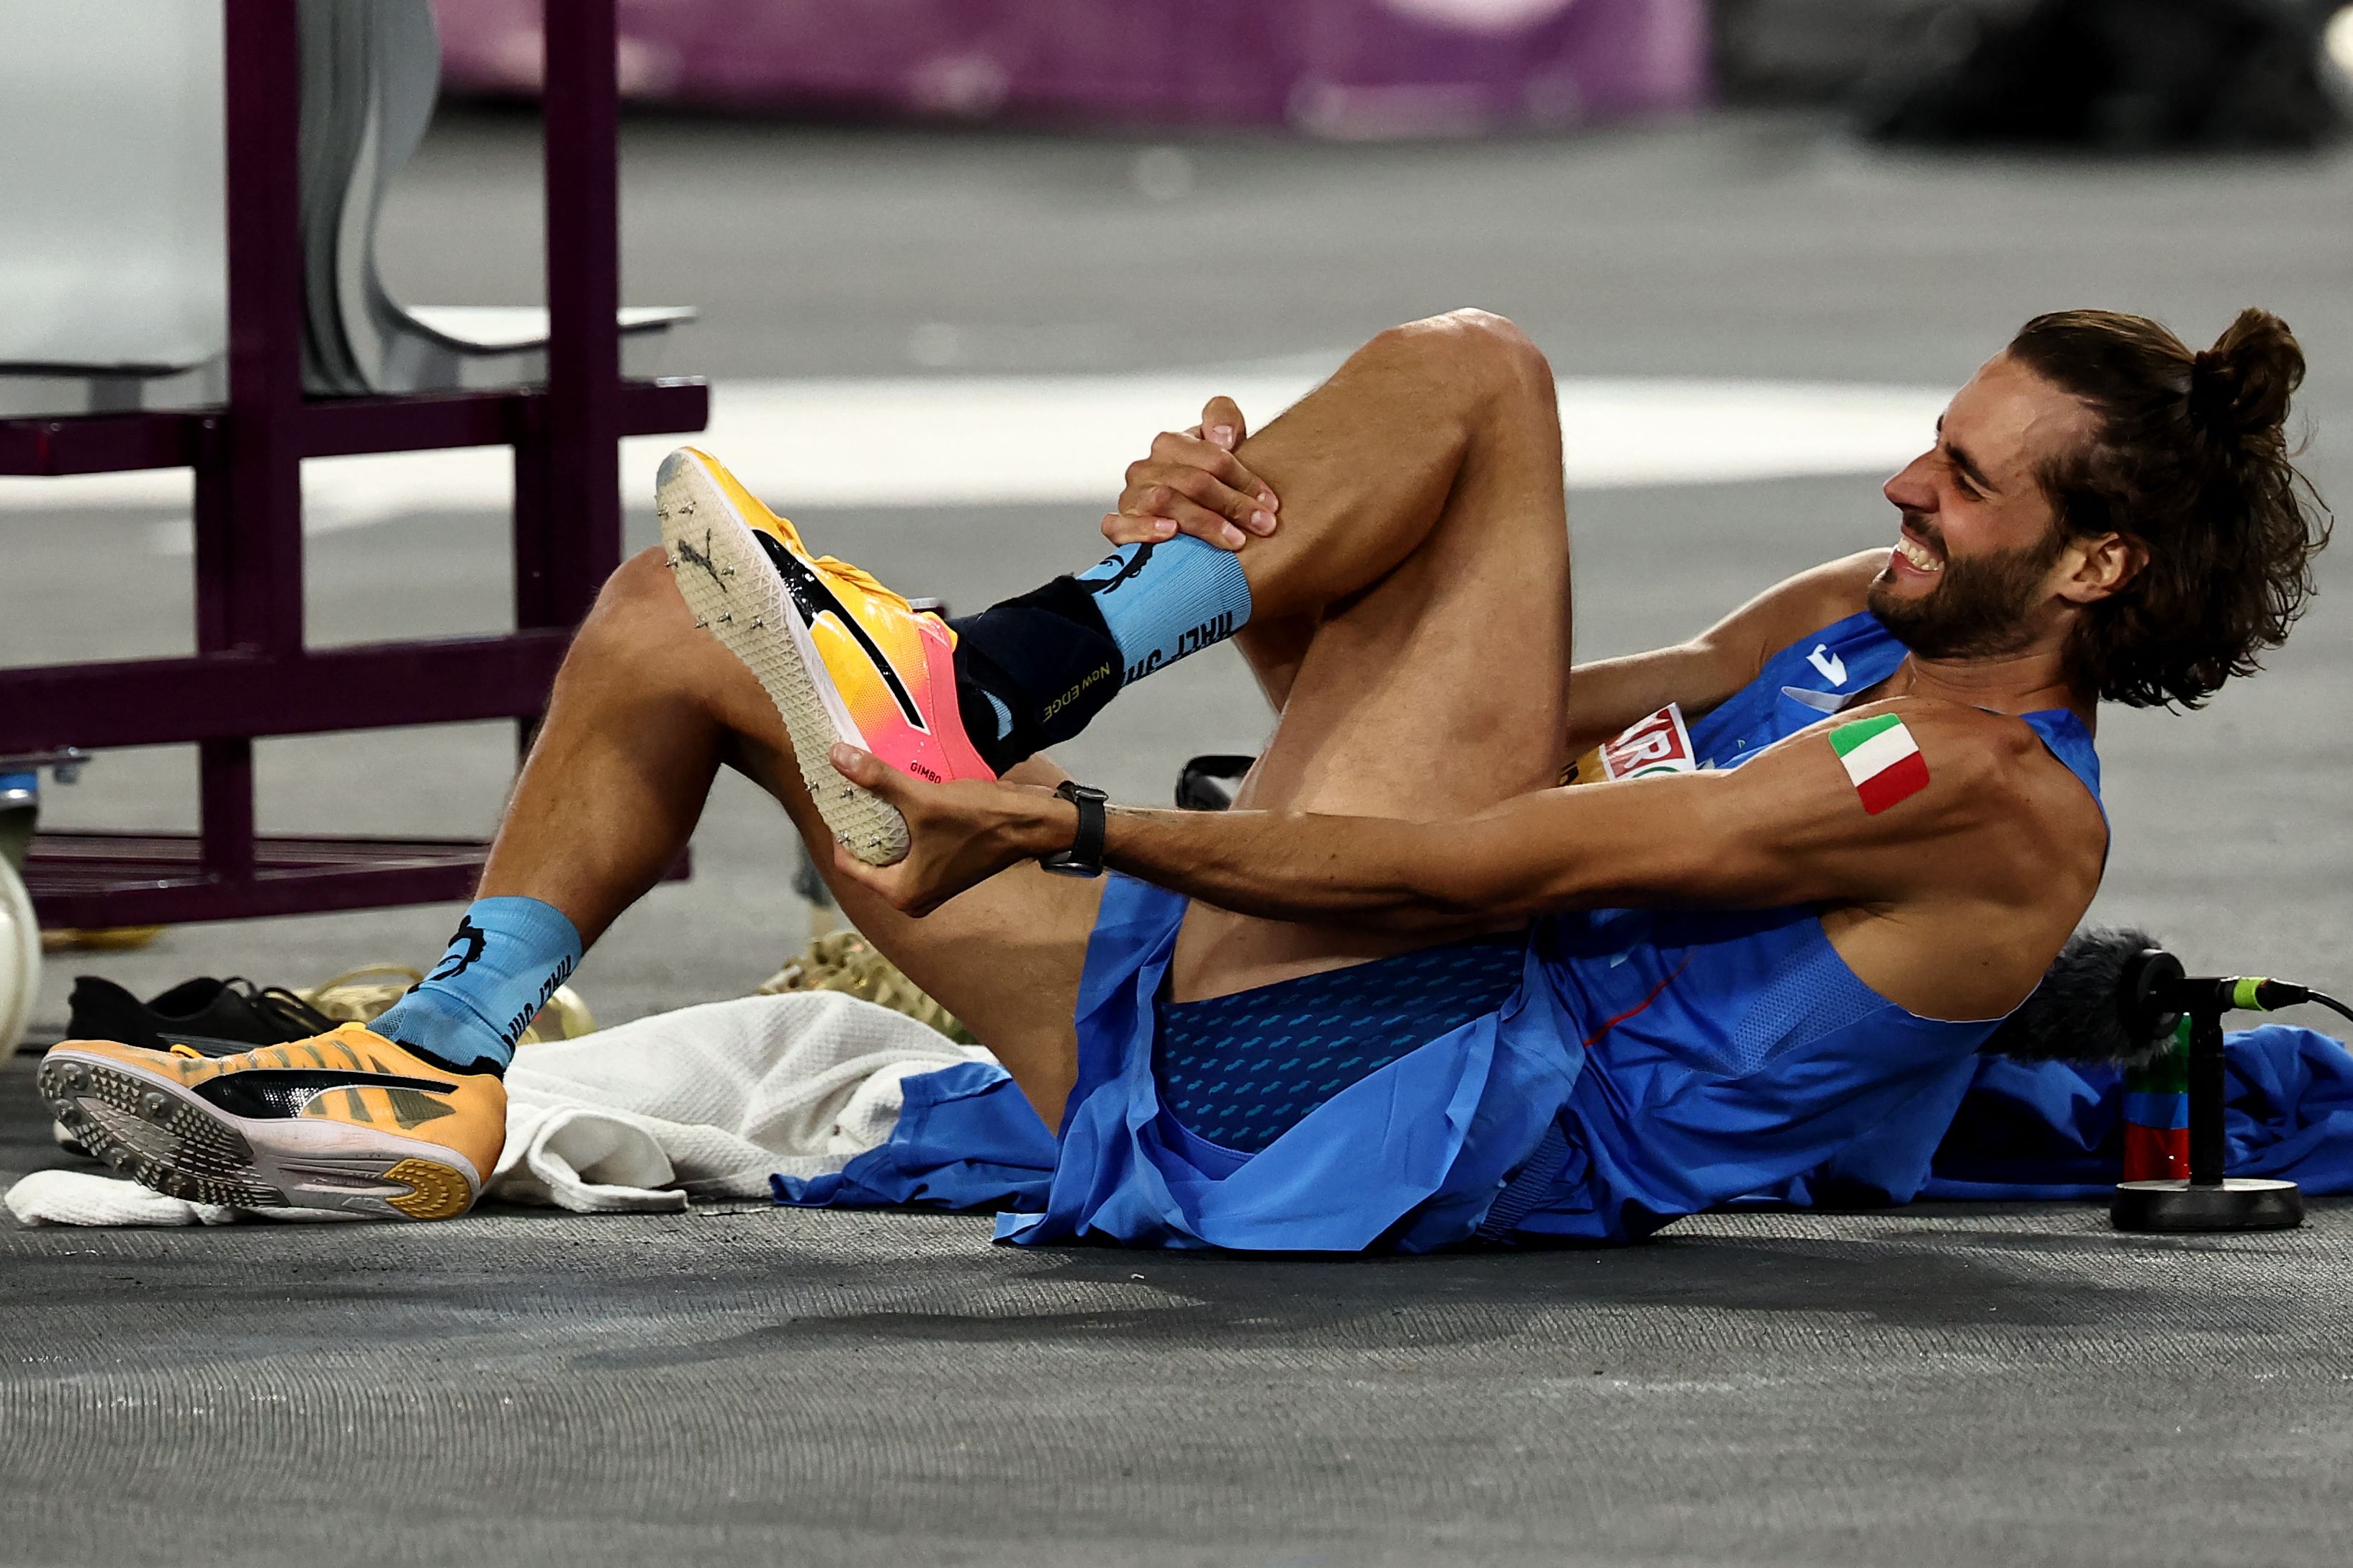 Le champion de saut italien se blesse pour rire